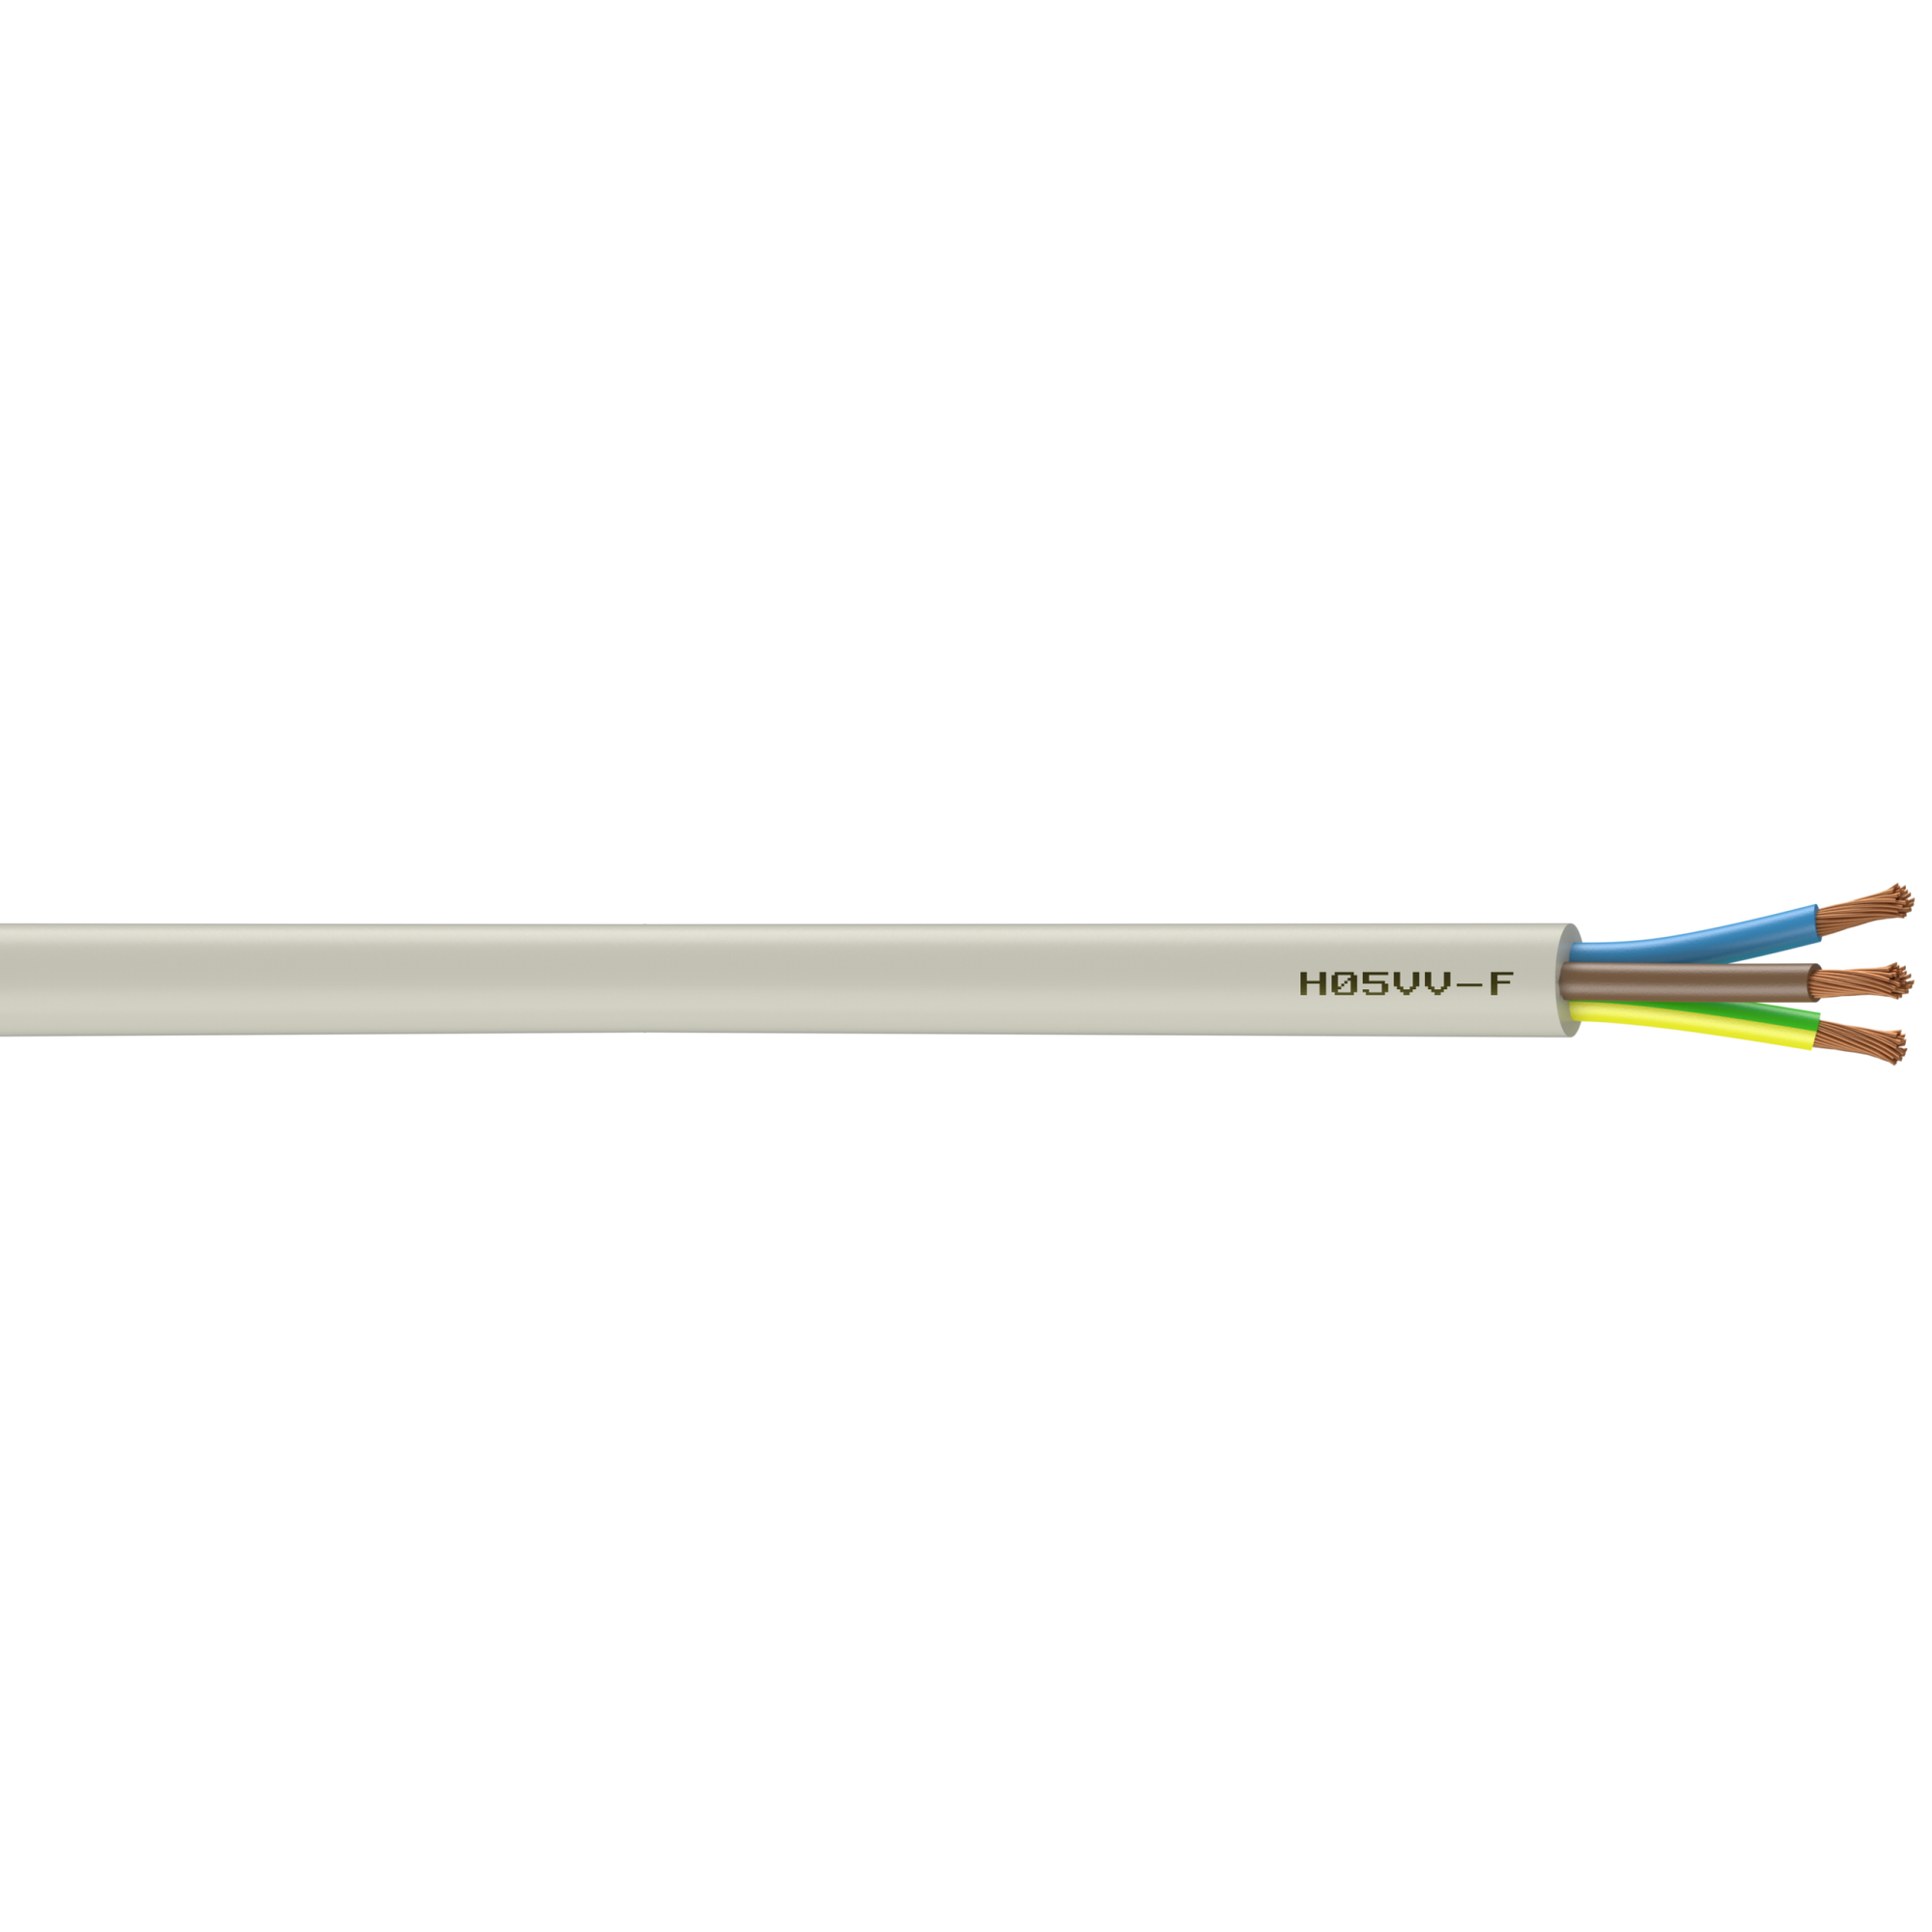 Câble électrique 3 G 2.5 mm² ho5vvf L.3 m, blanc 0